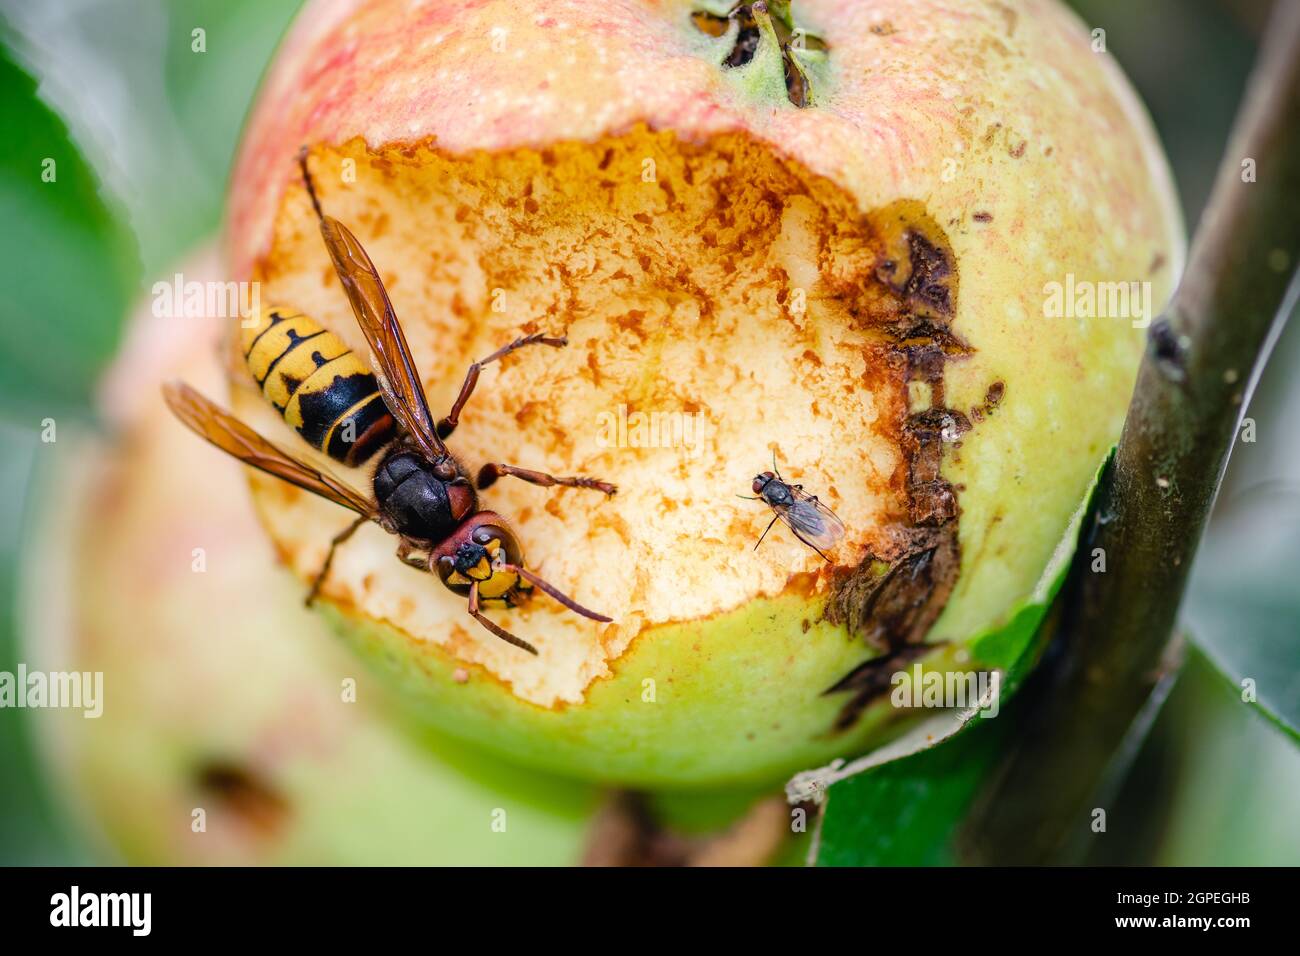 Guêpe européenne géante ou crabre Vespa avec petite mouche mangeant une pomme accrochée à un arbre, gros plan Banque D'Images